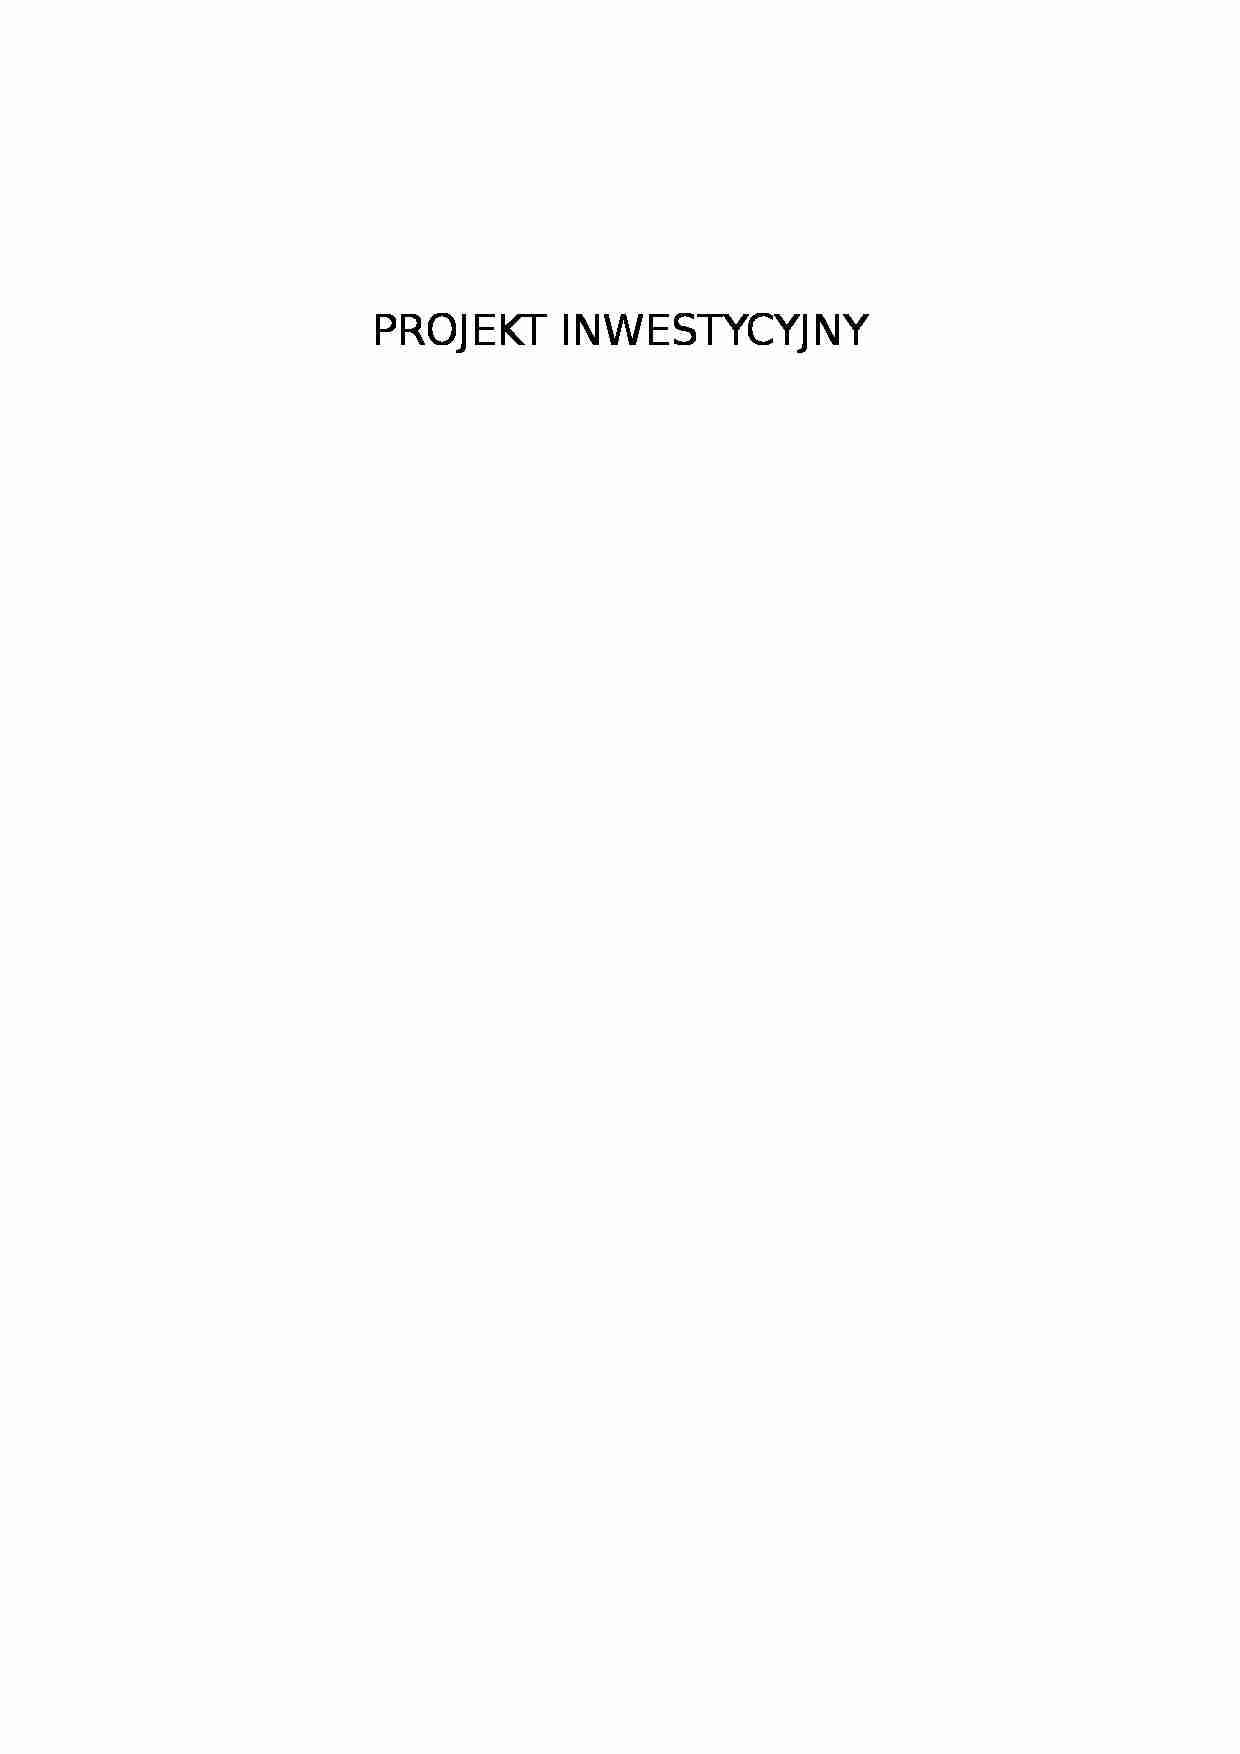 Projekt inwestycyjny - rynek kapitałowy - strona 1